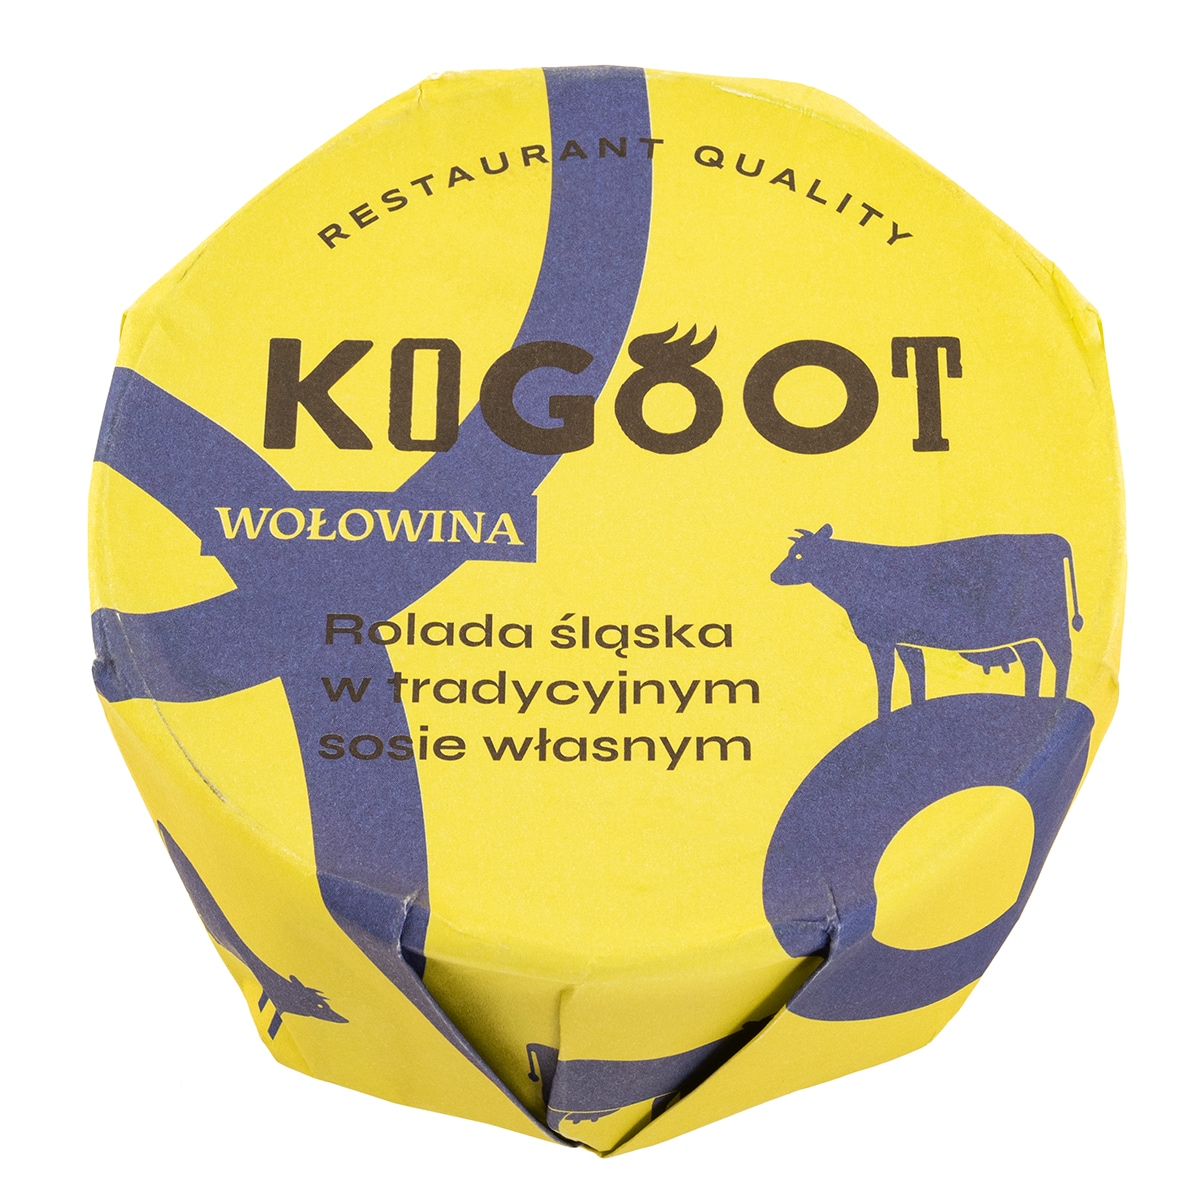 Консервовані продукти Kogoot - Сілезький рулет у традиційному власному соусі 300 г